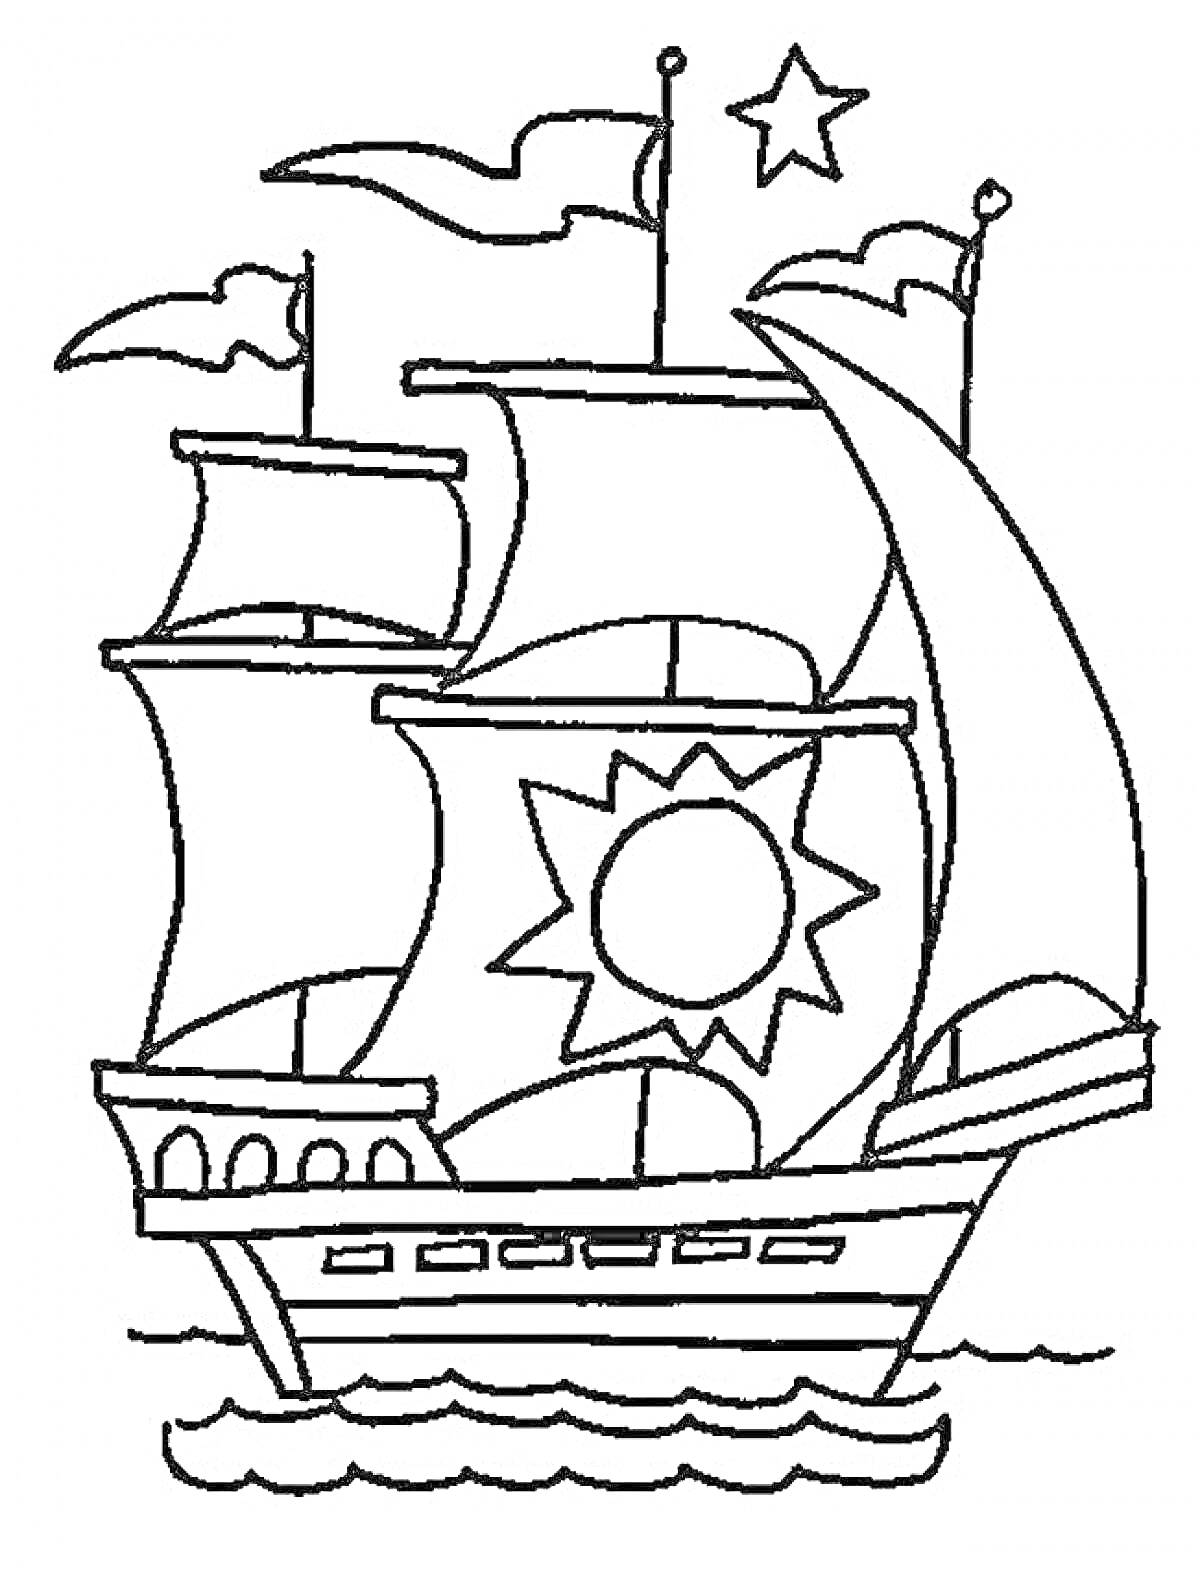 Раскраска Парусный корабль с тремя парусами, флагами, звездой и солнцем на переднем парусе, плывущий по волнам.